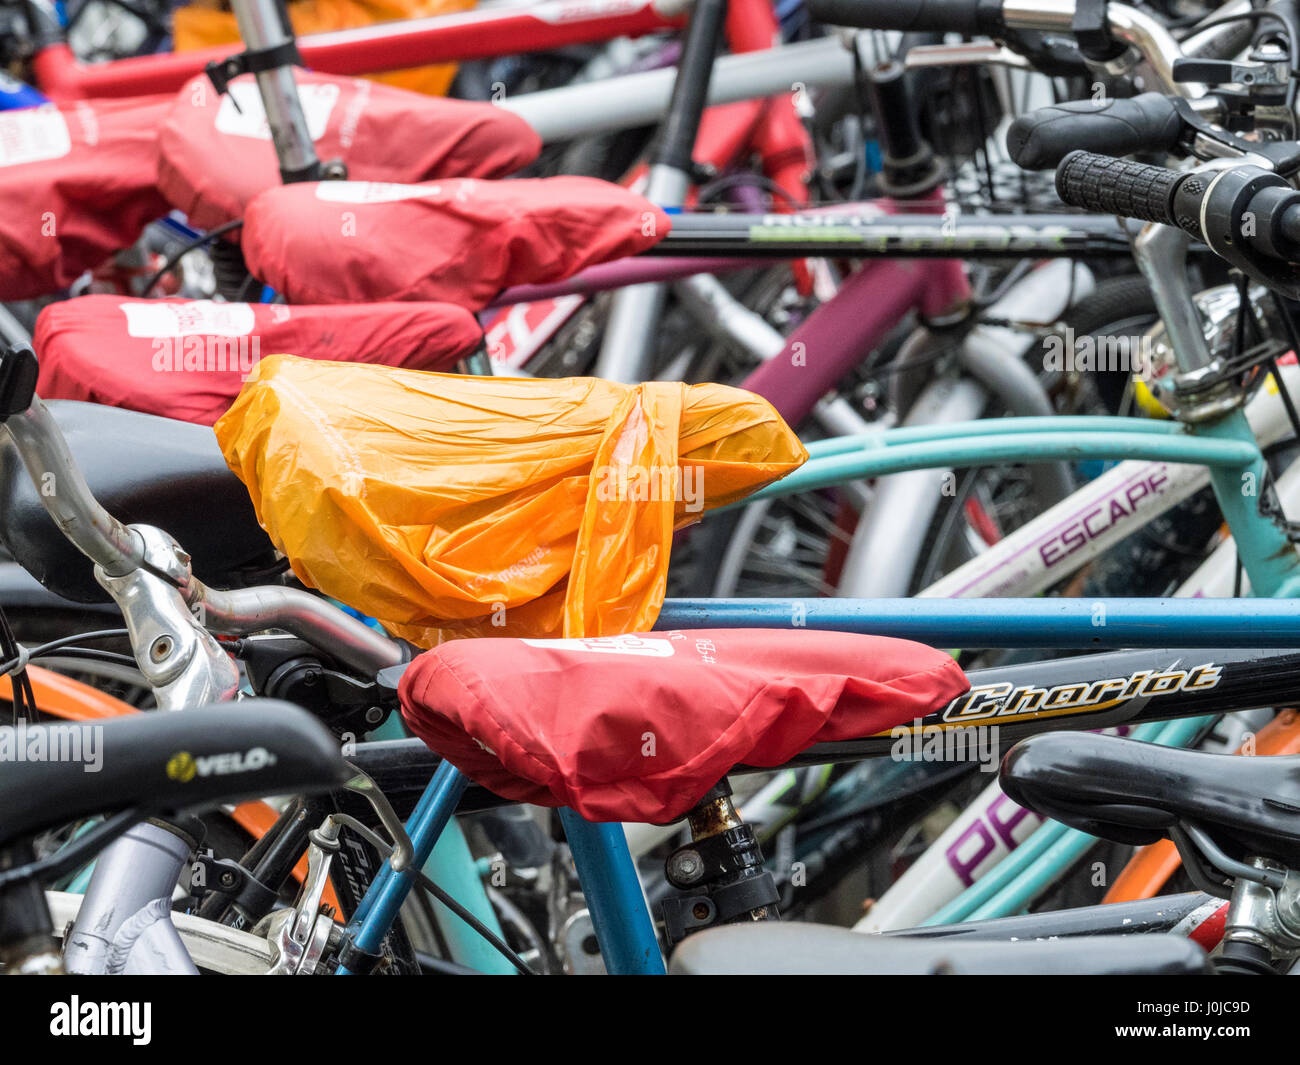 Vélos étudiant parqué dans Cambridge, Royaume-Uni. Les sièges sont protégés de la pluie par des couvercles amovibles. Banque D'Images